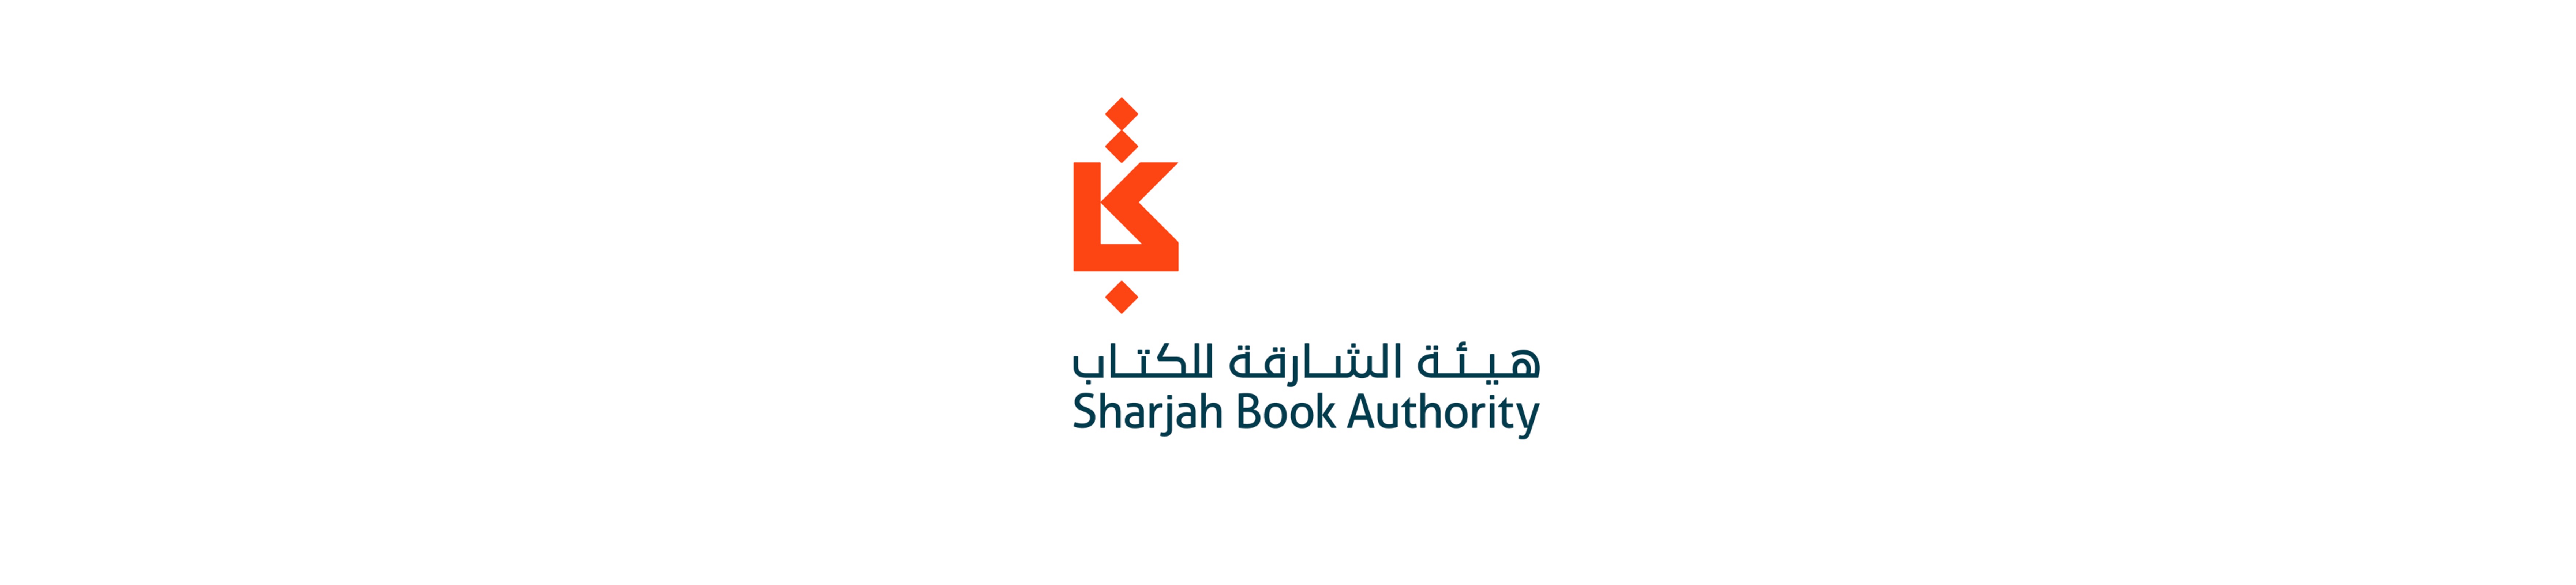 شعار هيئة الشارقة للكتاب